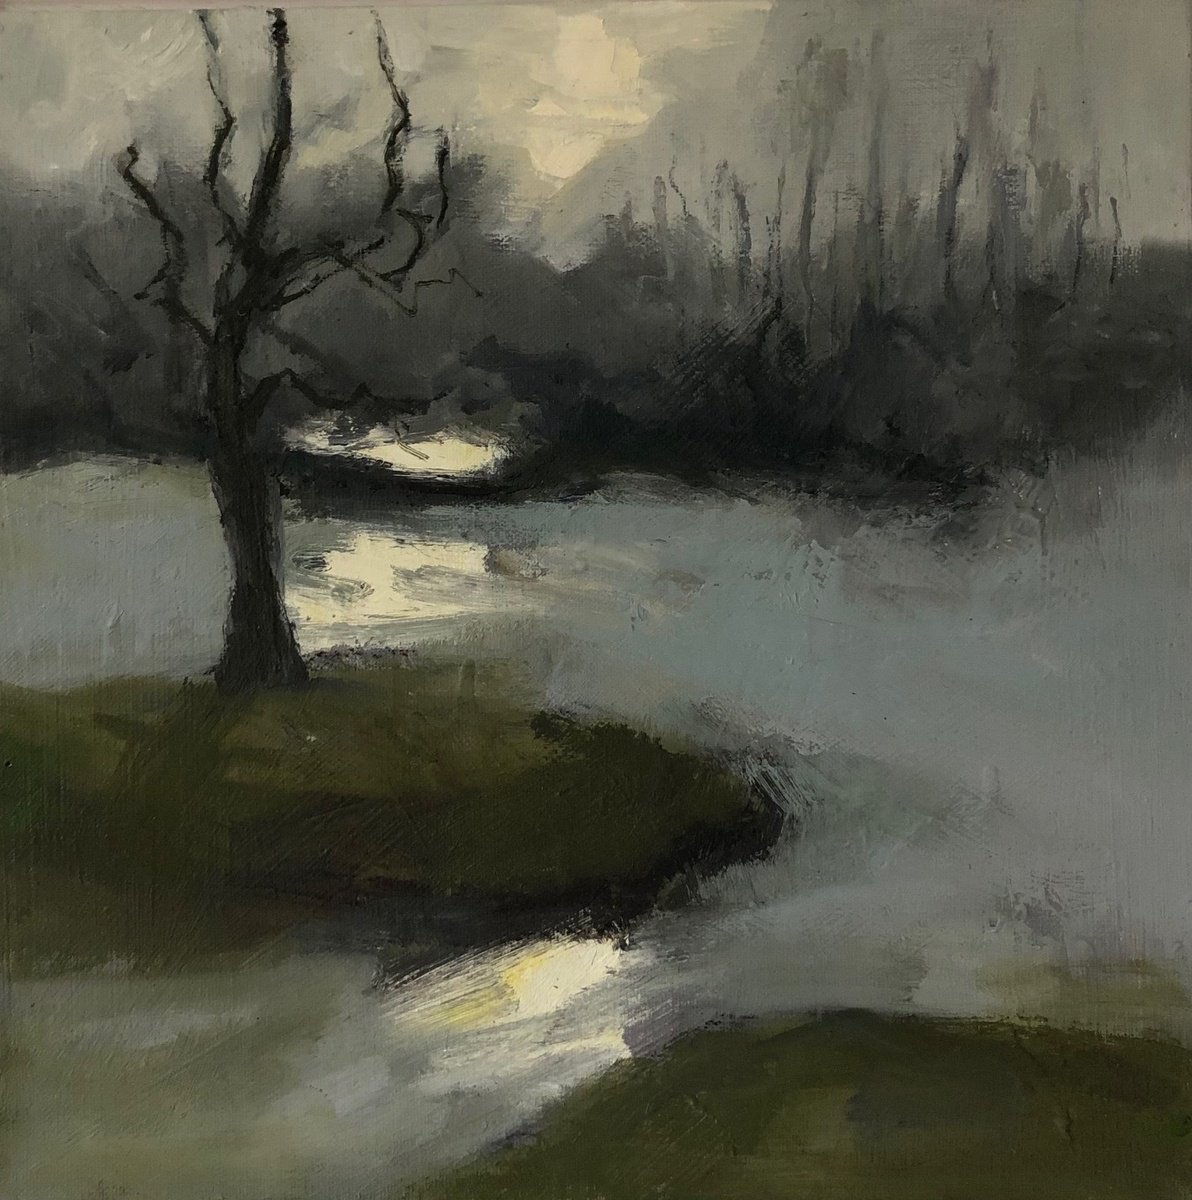 Silver Lake 1 by Joanna Farrow